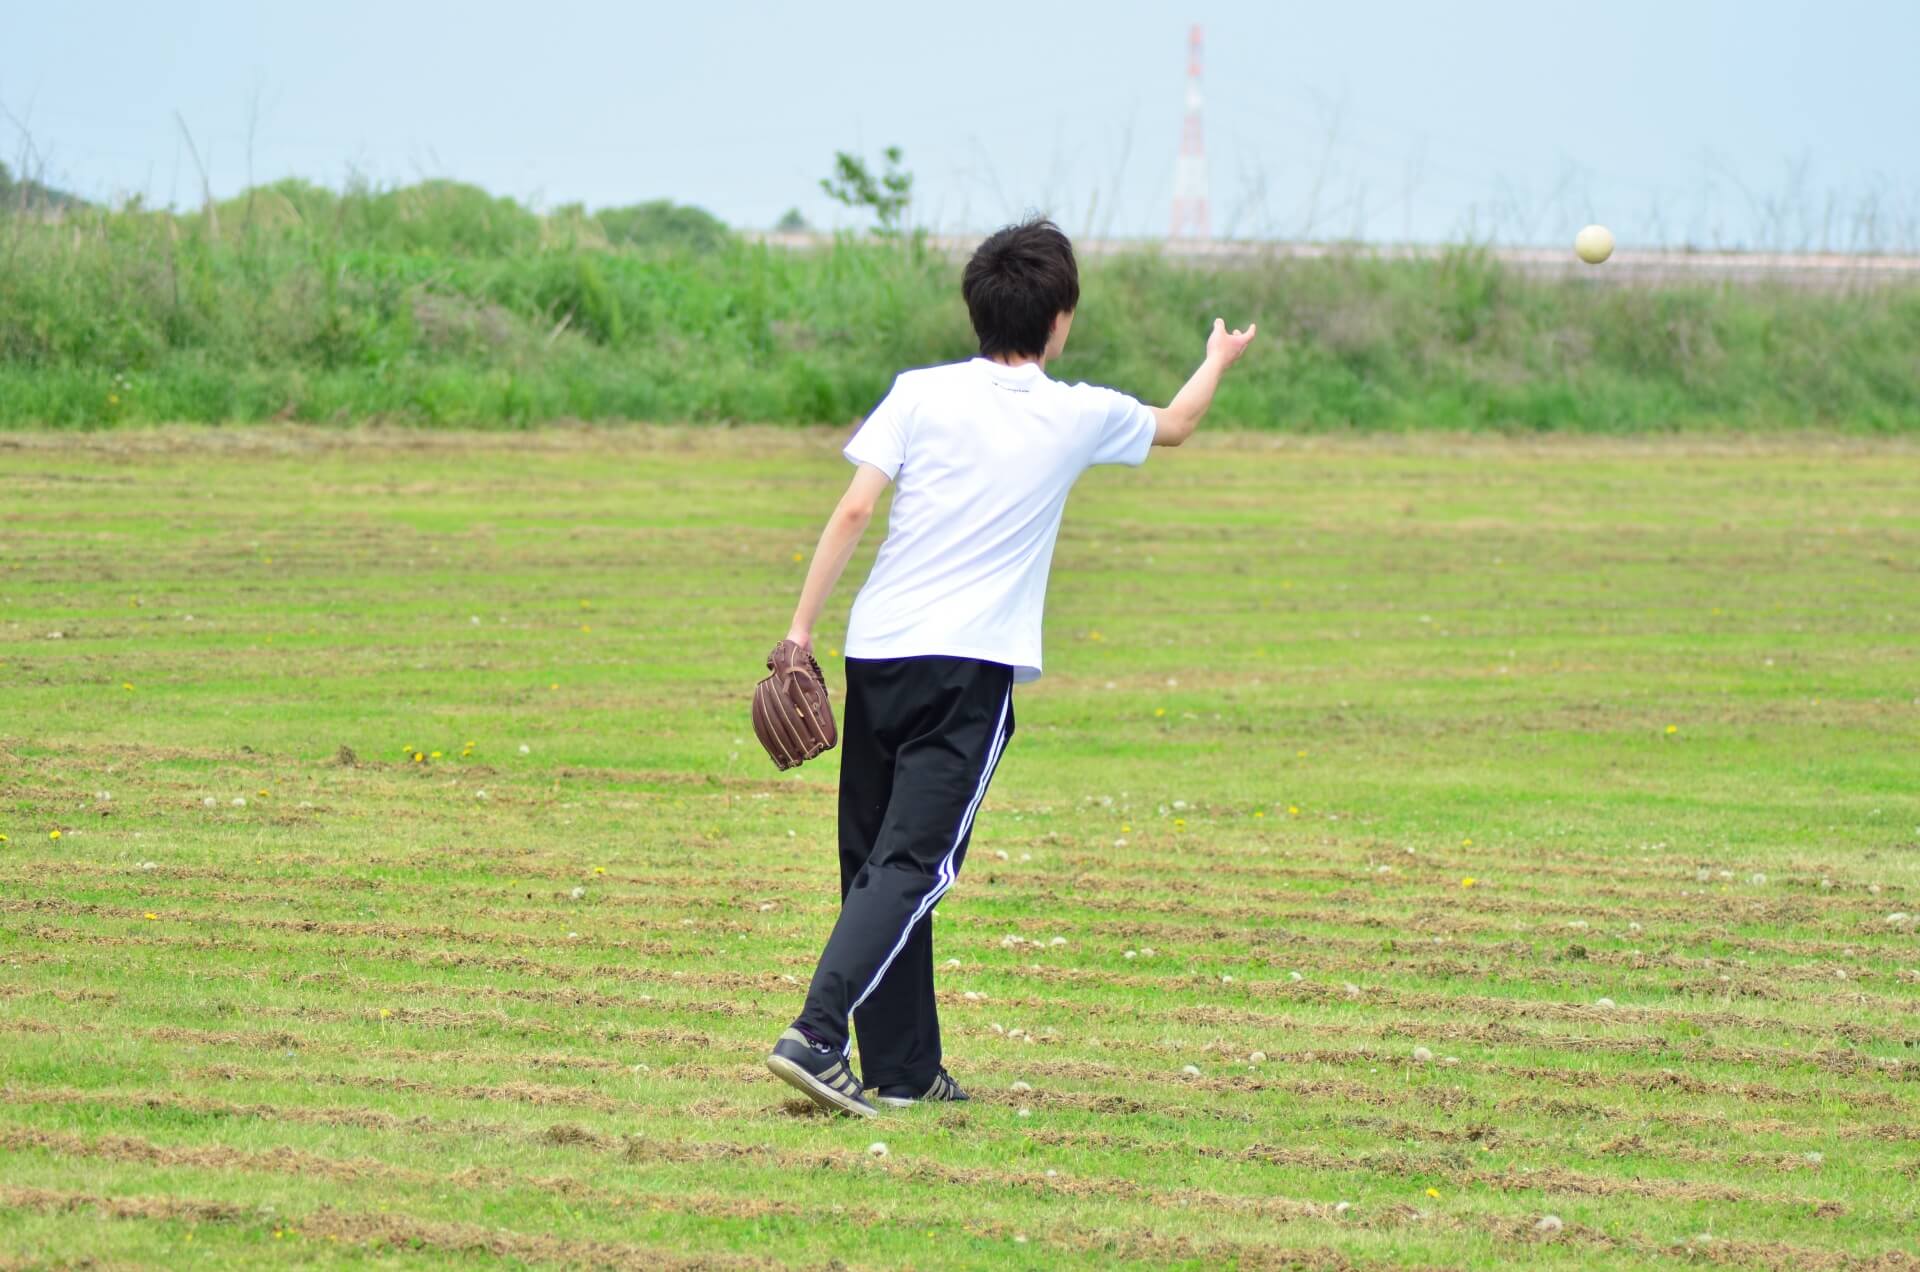 ソフトボール投げで使いたい 遠投の距離を伸ばすためのトレーニングとは 調整さん